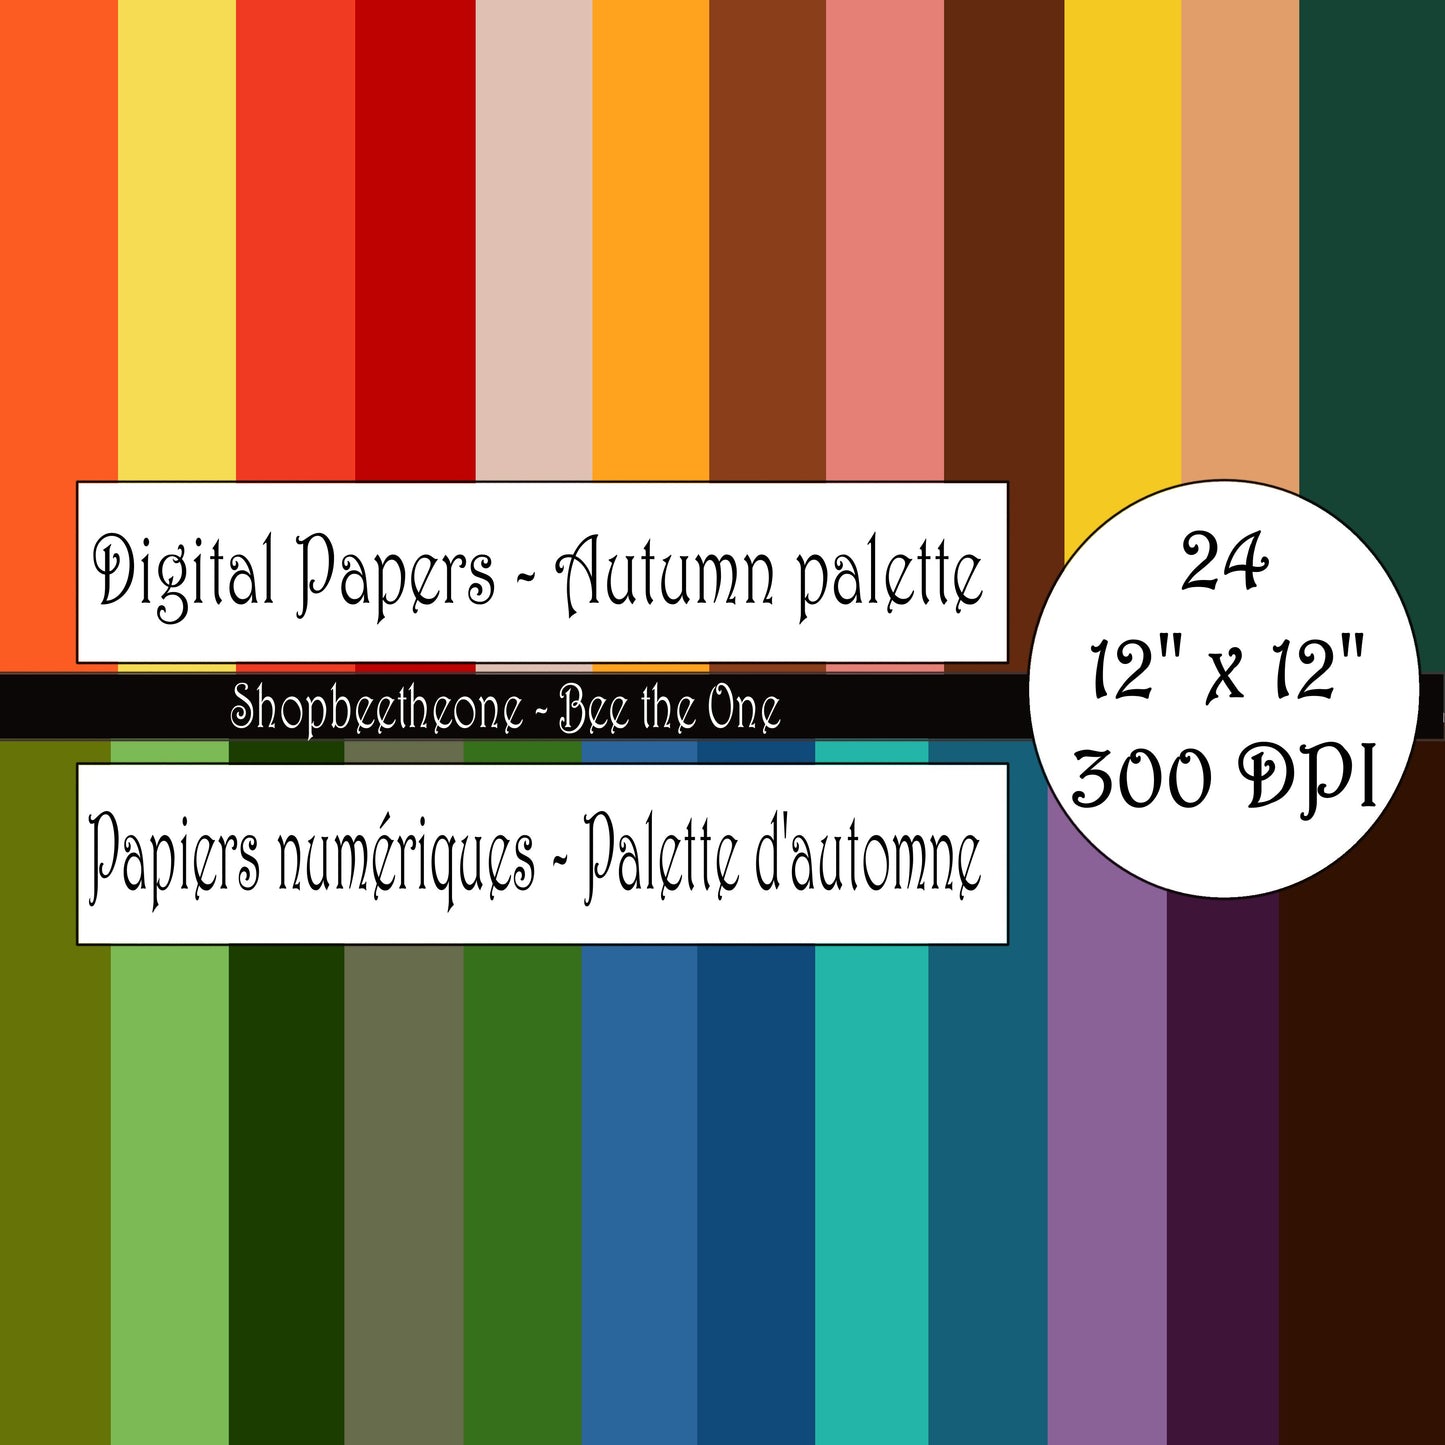 Papiers numériques "Palette d'Automne" - 12" x 12" - 300 DPI - Set de 24 images - A télécharger